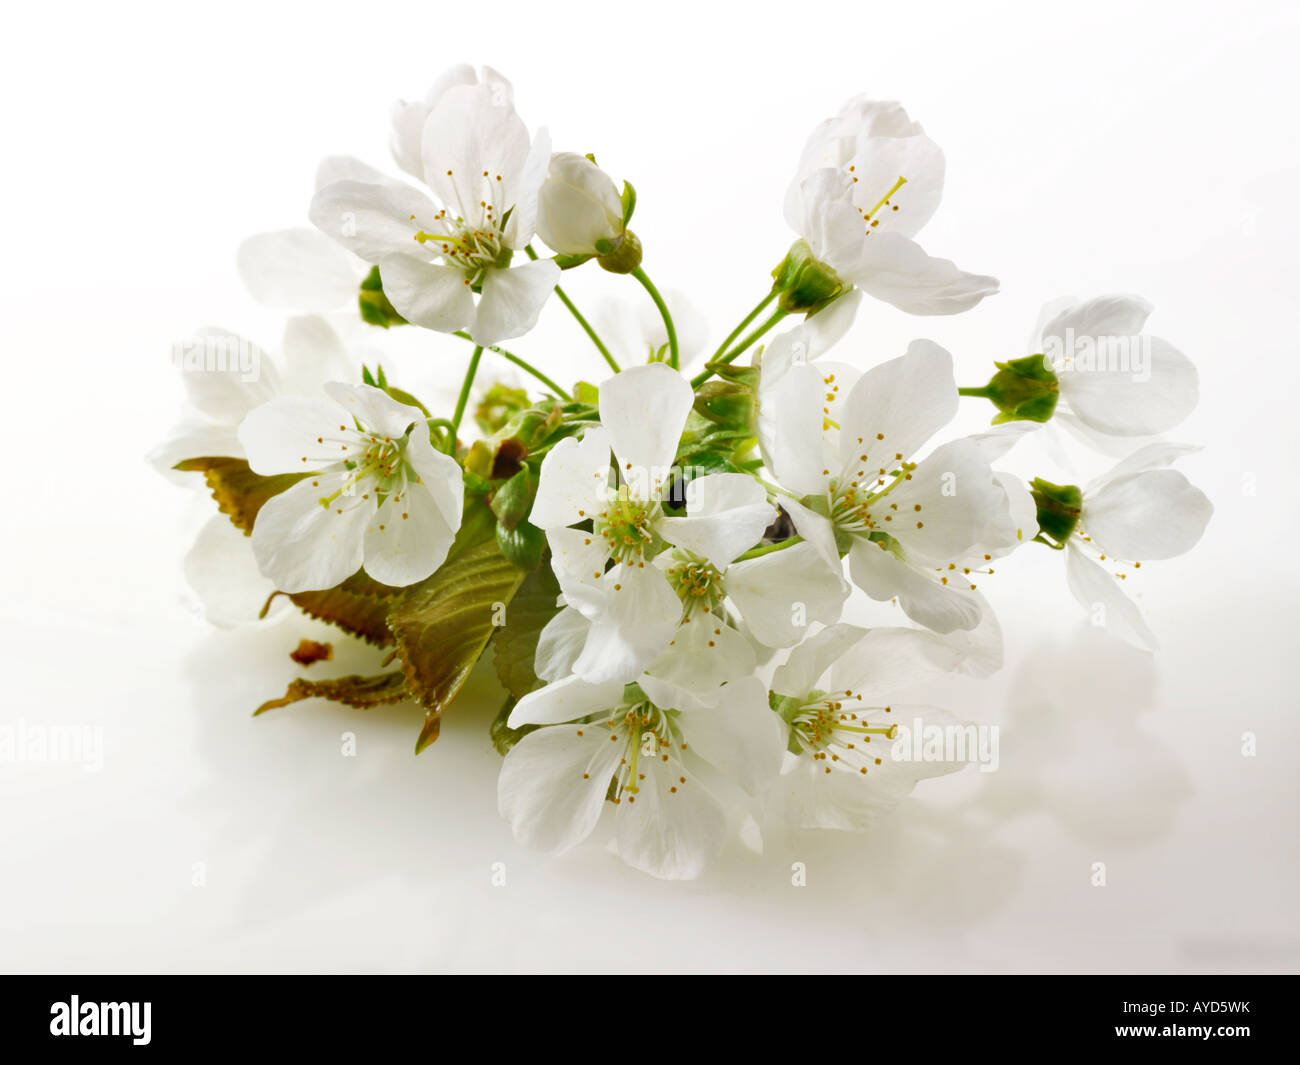 Fotos de flor de cerezo blancos frescos, flores y pétalos frescos escogidos de un cerezo contra un fondo blanco para recorte Foto de stock